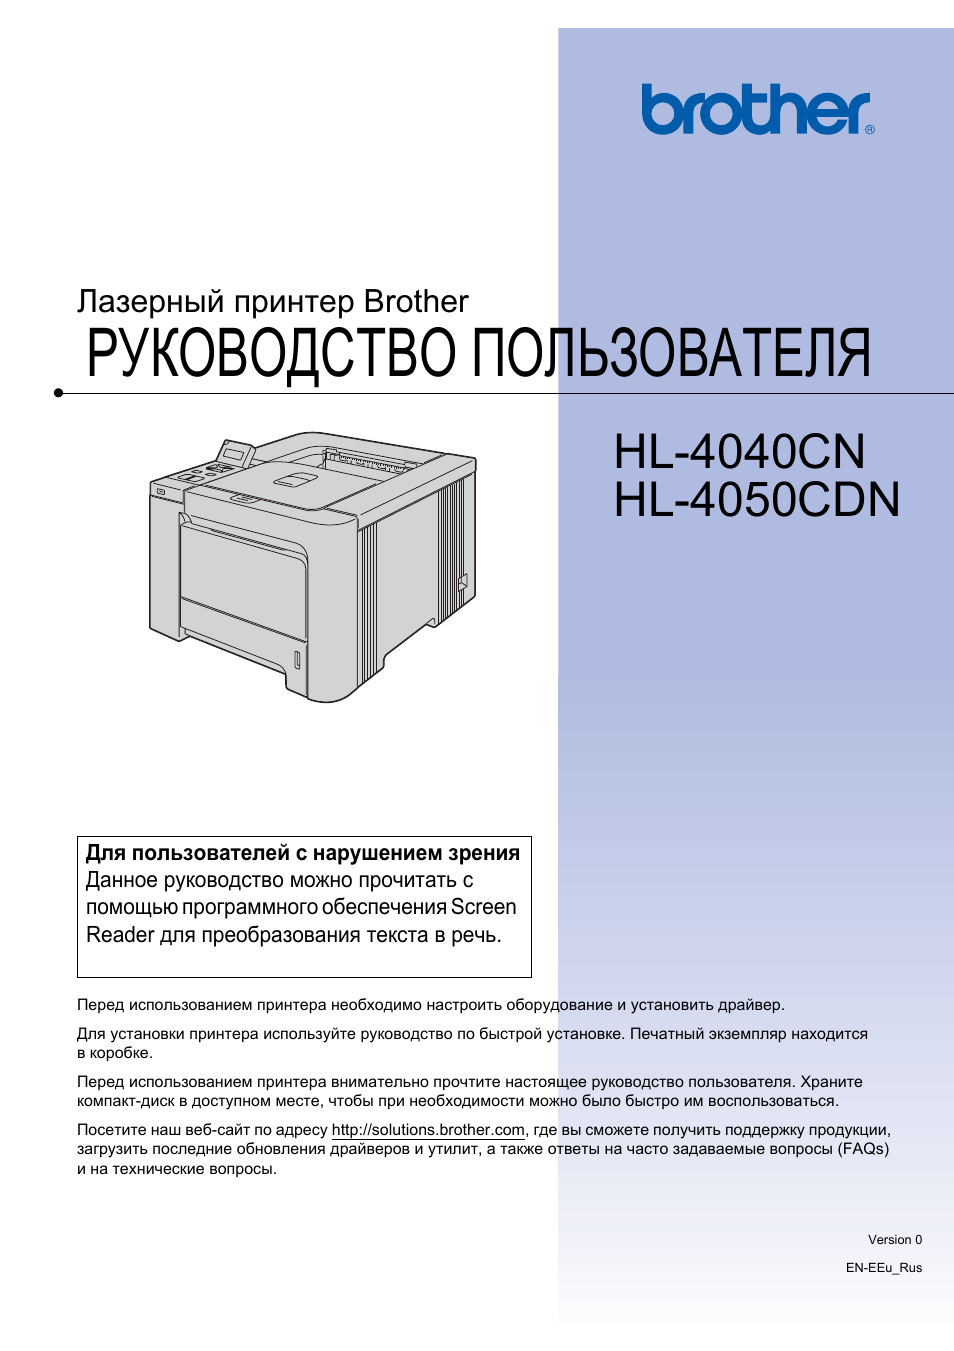 Инструкция принтер brother. Принтер Бразер cdn 4050. Hl-4050cdn. Руководство пользователя для принтера. Инструкция к принтеру brother.